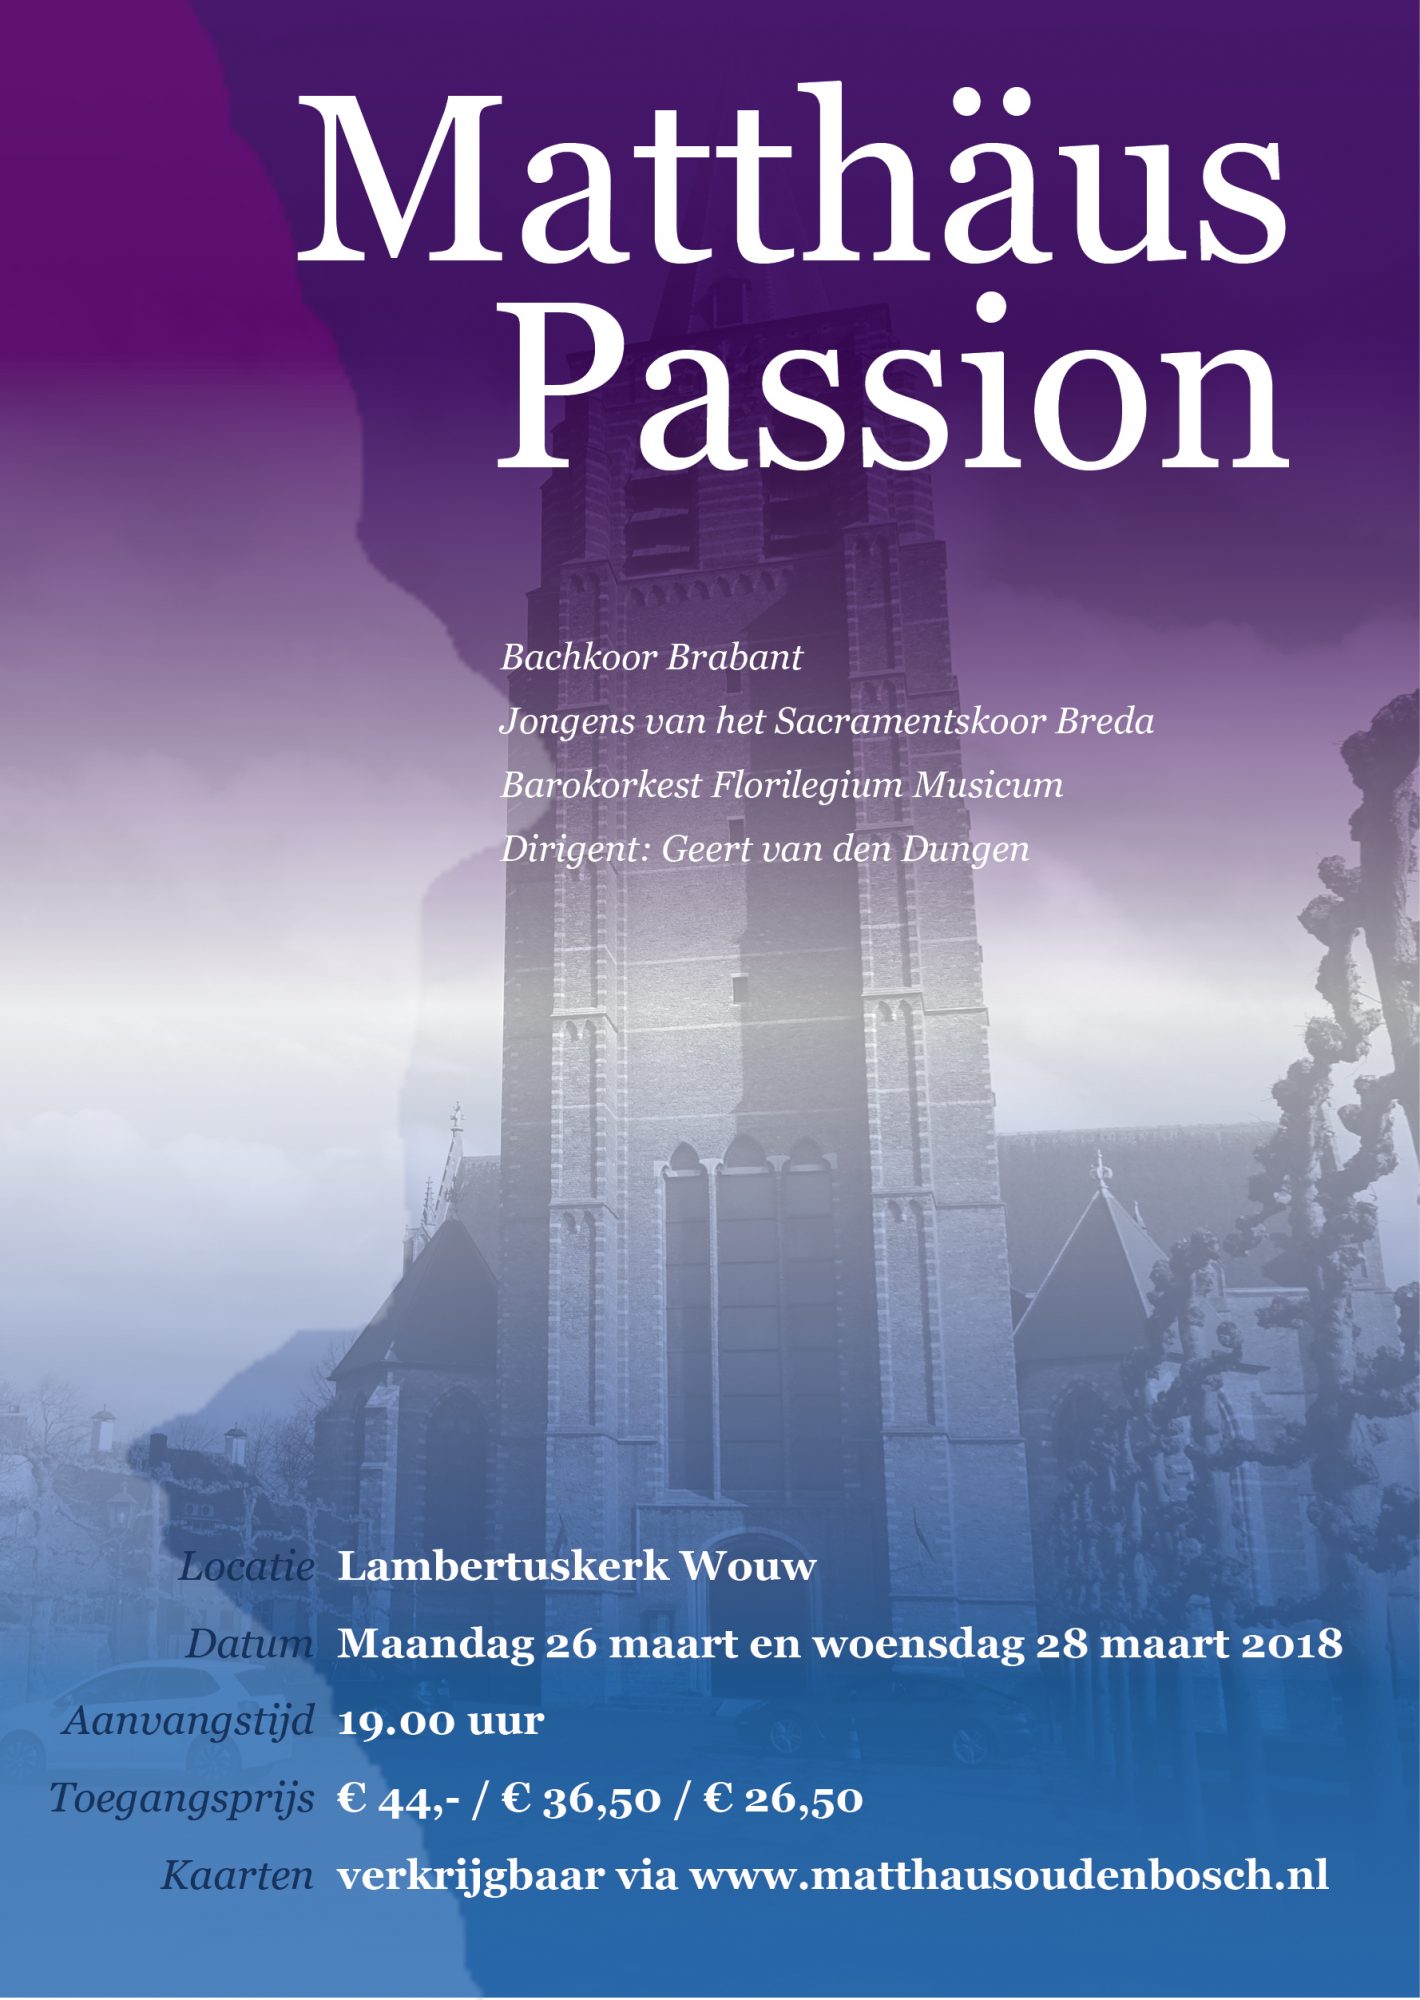 Matthäus Passion Bachkoor Brabant Wouw (Oudenbosch)